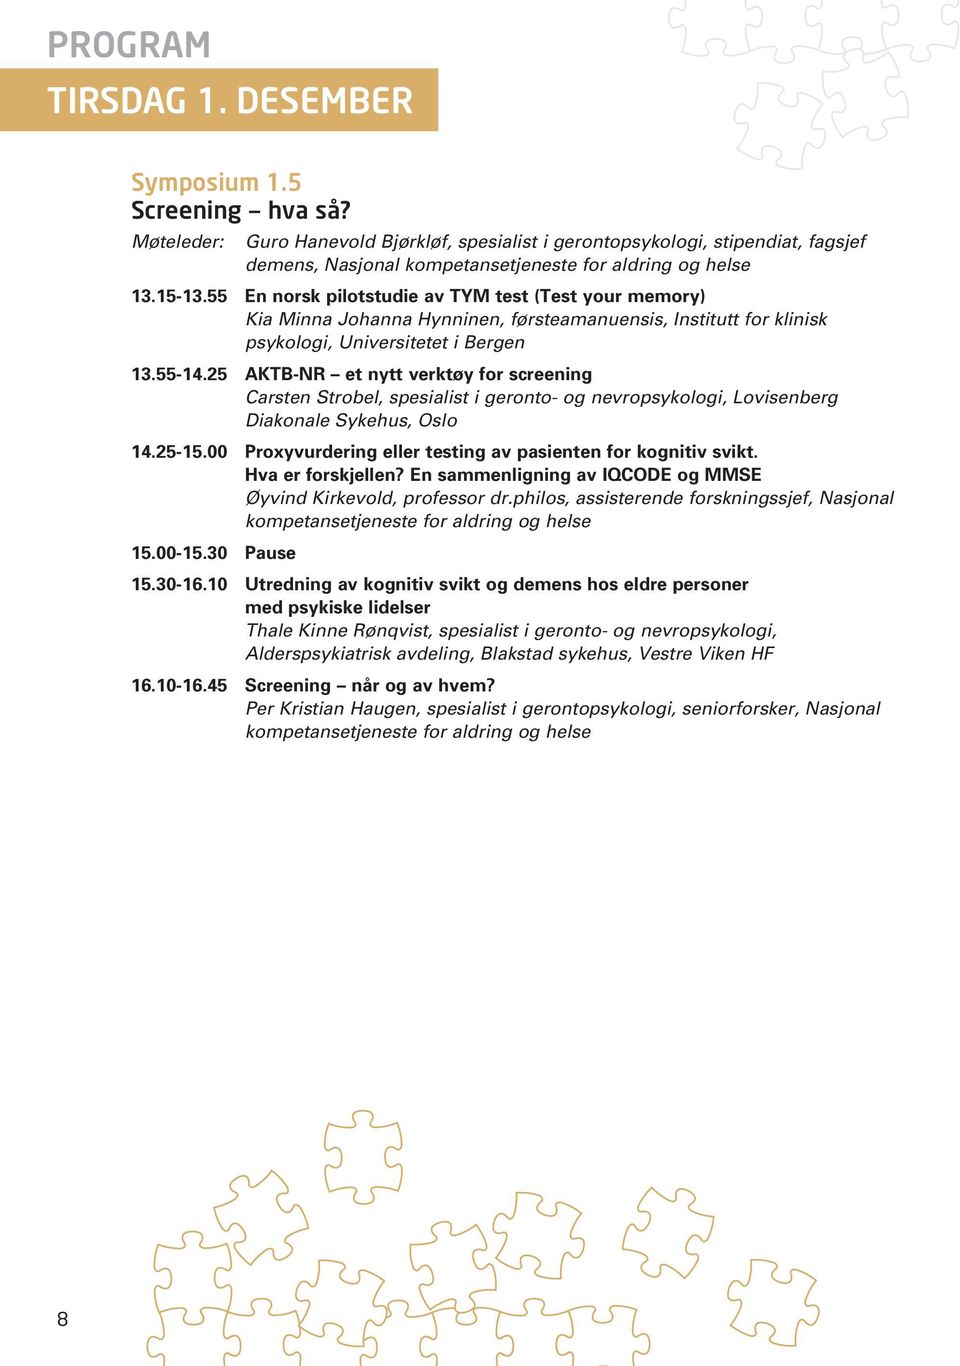 25 AKTB-NR et nytt verktøy for screening Carsten Strobel, spesialist i geronto- og nevropsykologi, Lovisenberg Diakonale Sykehus, Oslo 14.25-15.